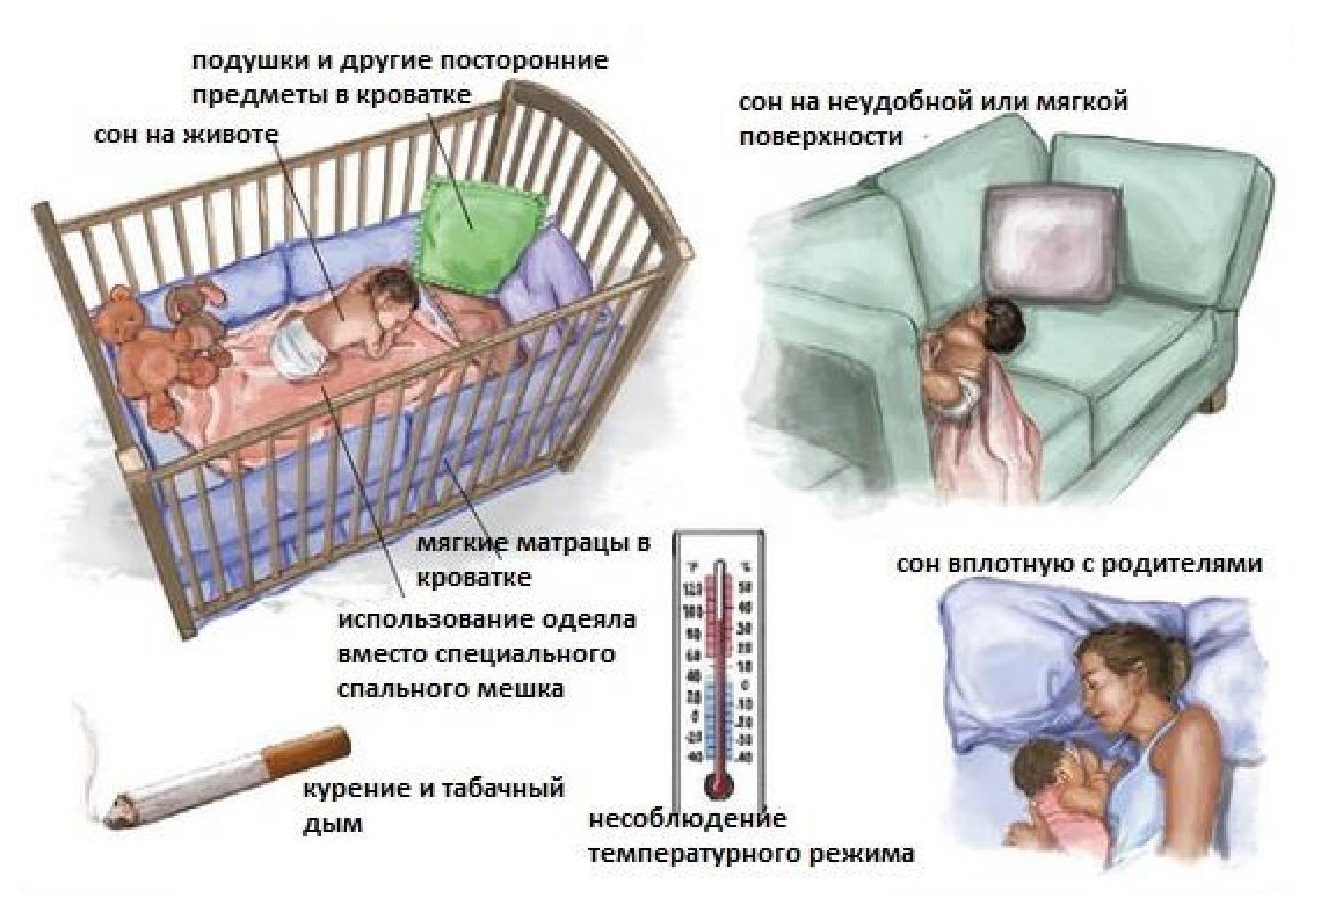 Синдром внезапной смерти у детей - симптомы болезни, профилактика и лечение синдрома внезапной смерти у детей, причины заболевания и его диагностика на eurolab